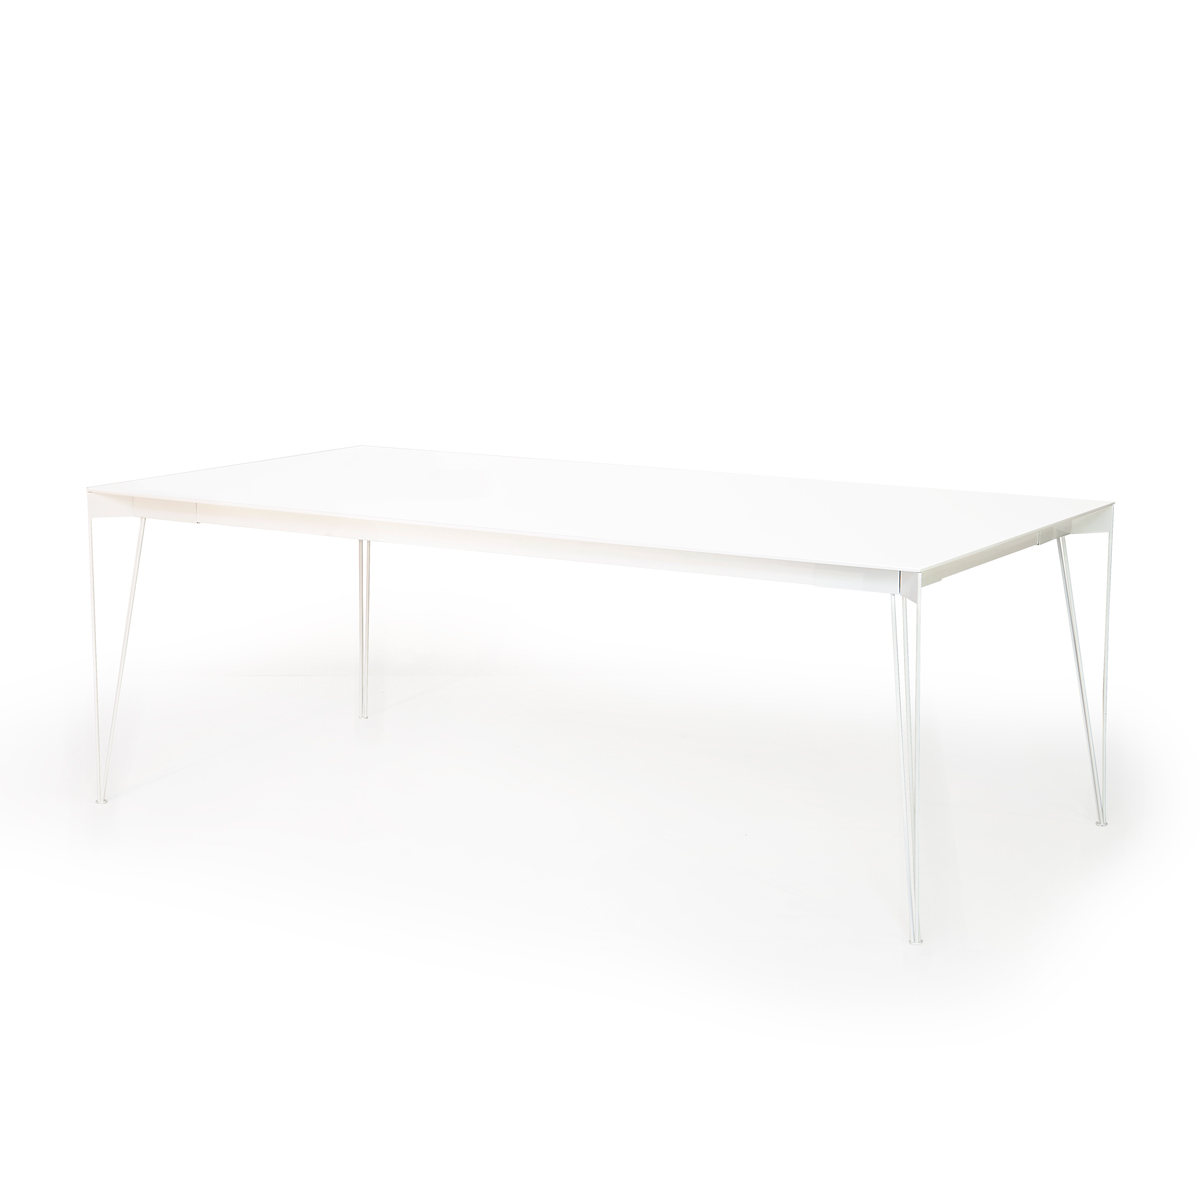 Muurame Viiva ruokapöytä 208x104 cm, valkoinen/valkoiset jalat